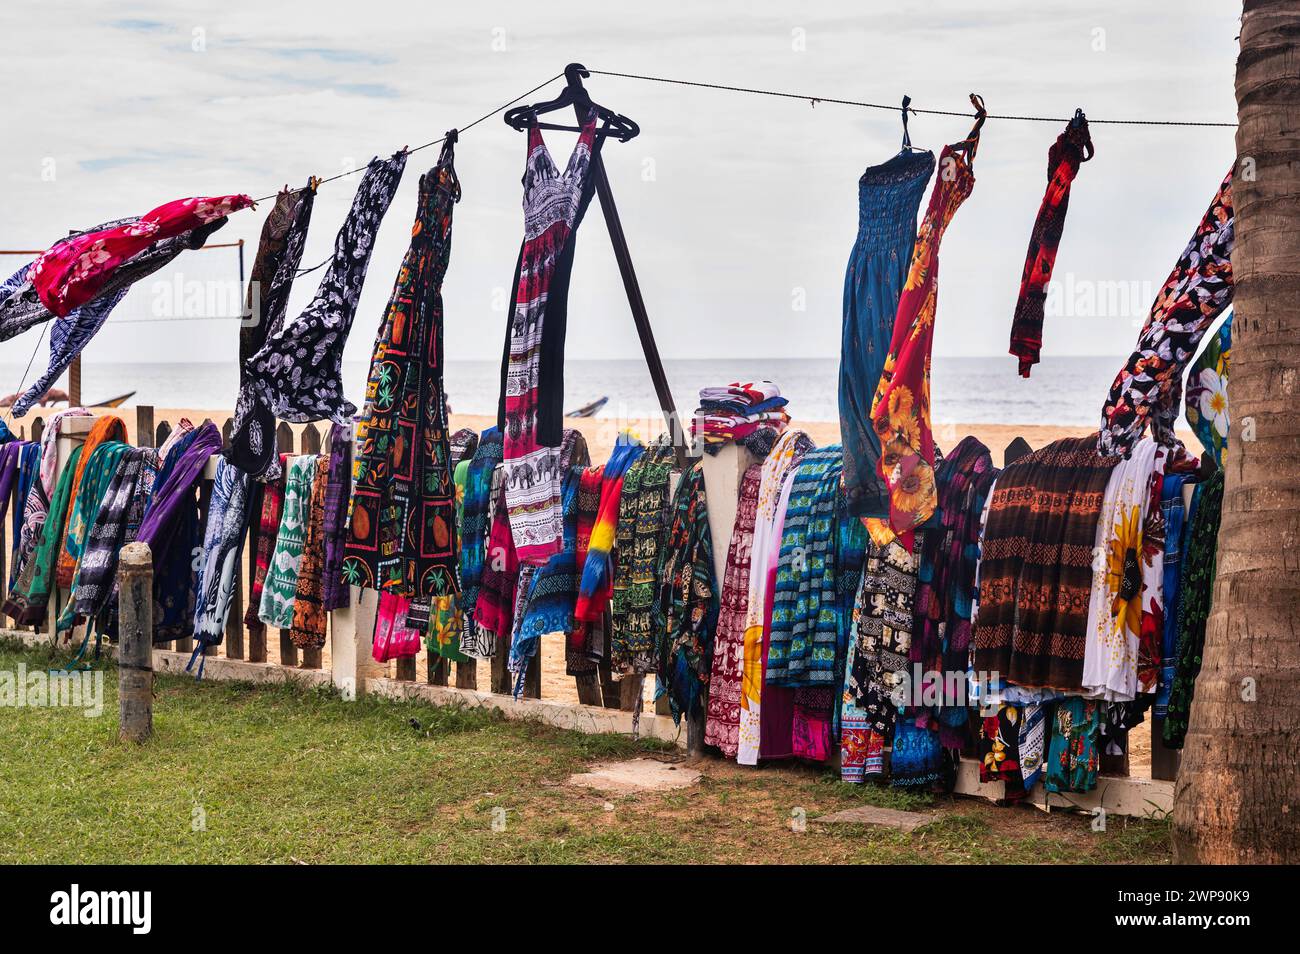 Viele bunte Kleider, Schal und Röcke hängen an der Schnur und fliegen im Wind am Strand. Sri Lanka, Waskaduwa. Stockfoto